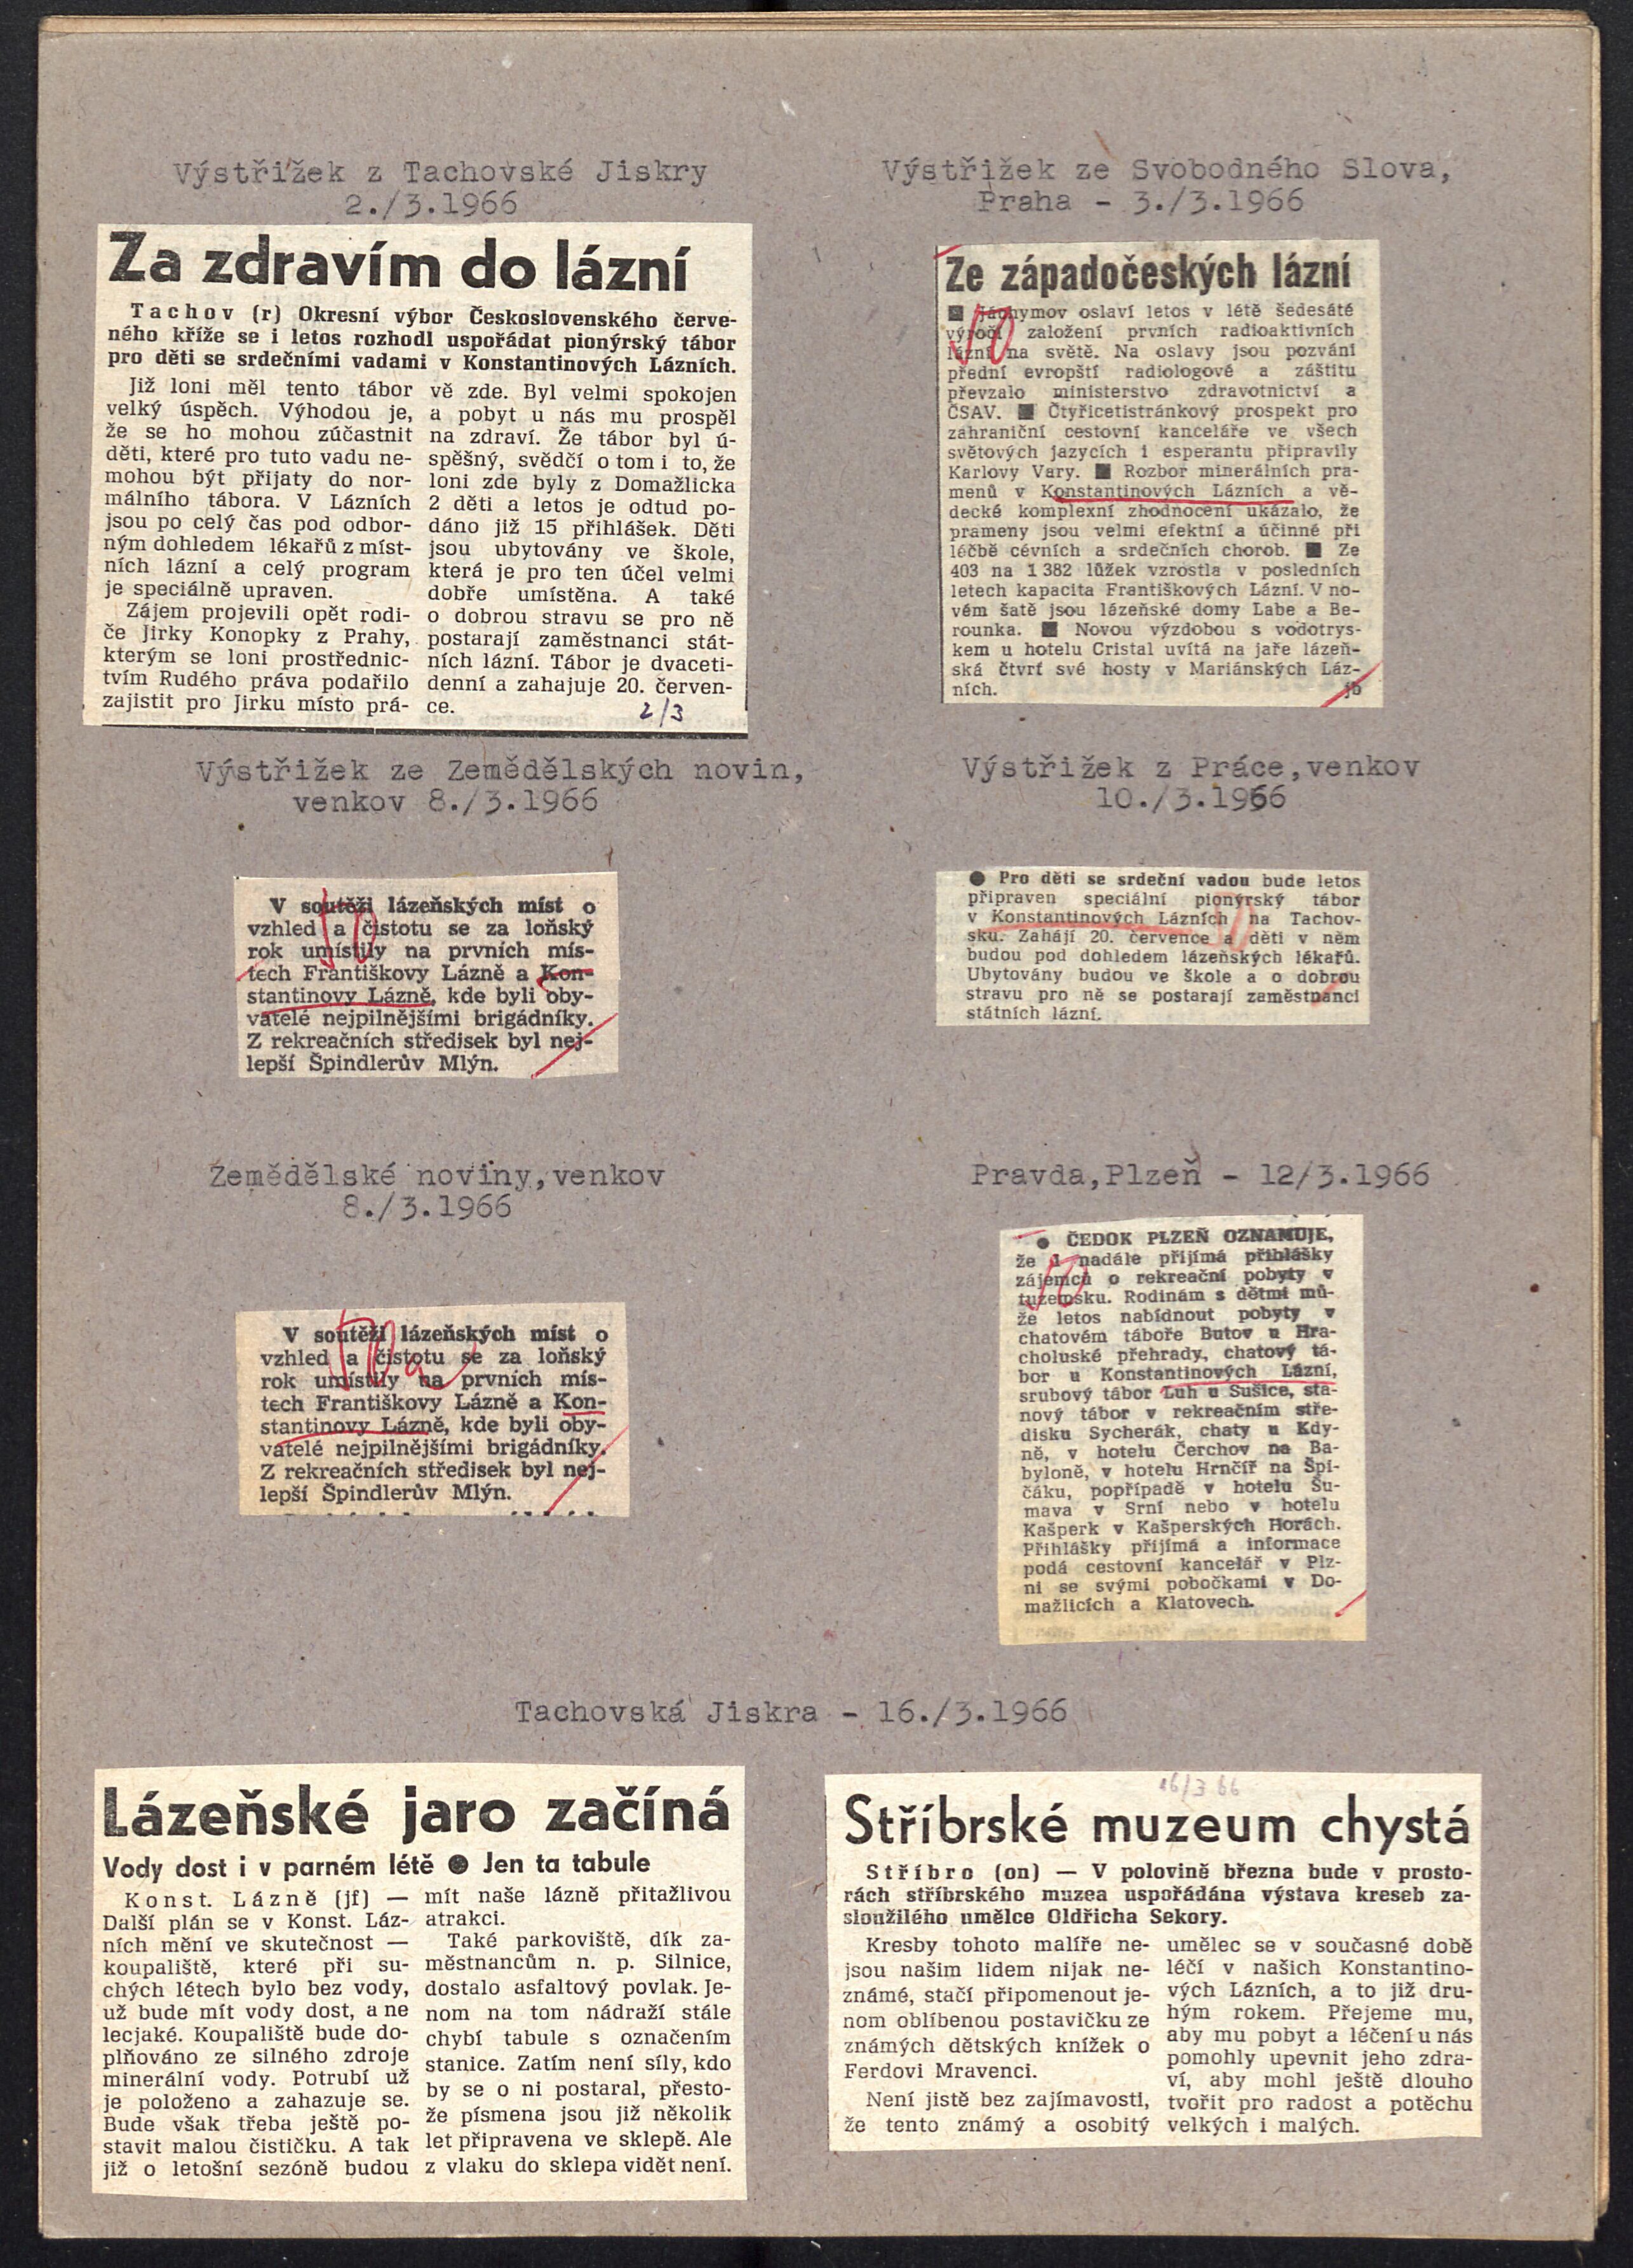 317. soap-tc_00060_obec-konstantinovy-lazne-vystrizky-1954-1970_3170